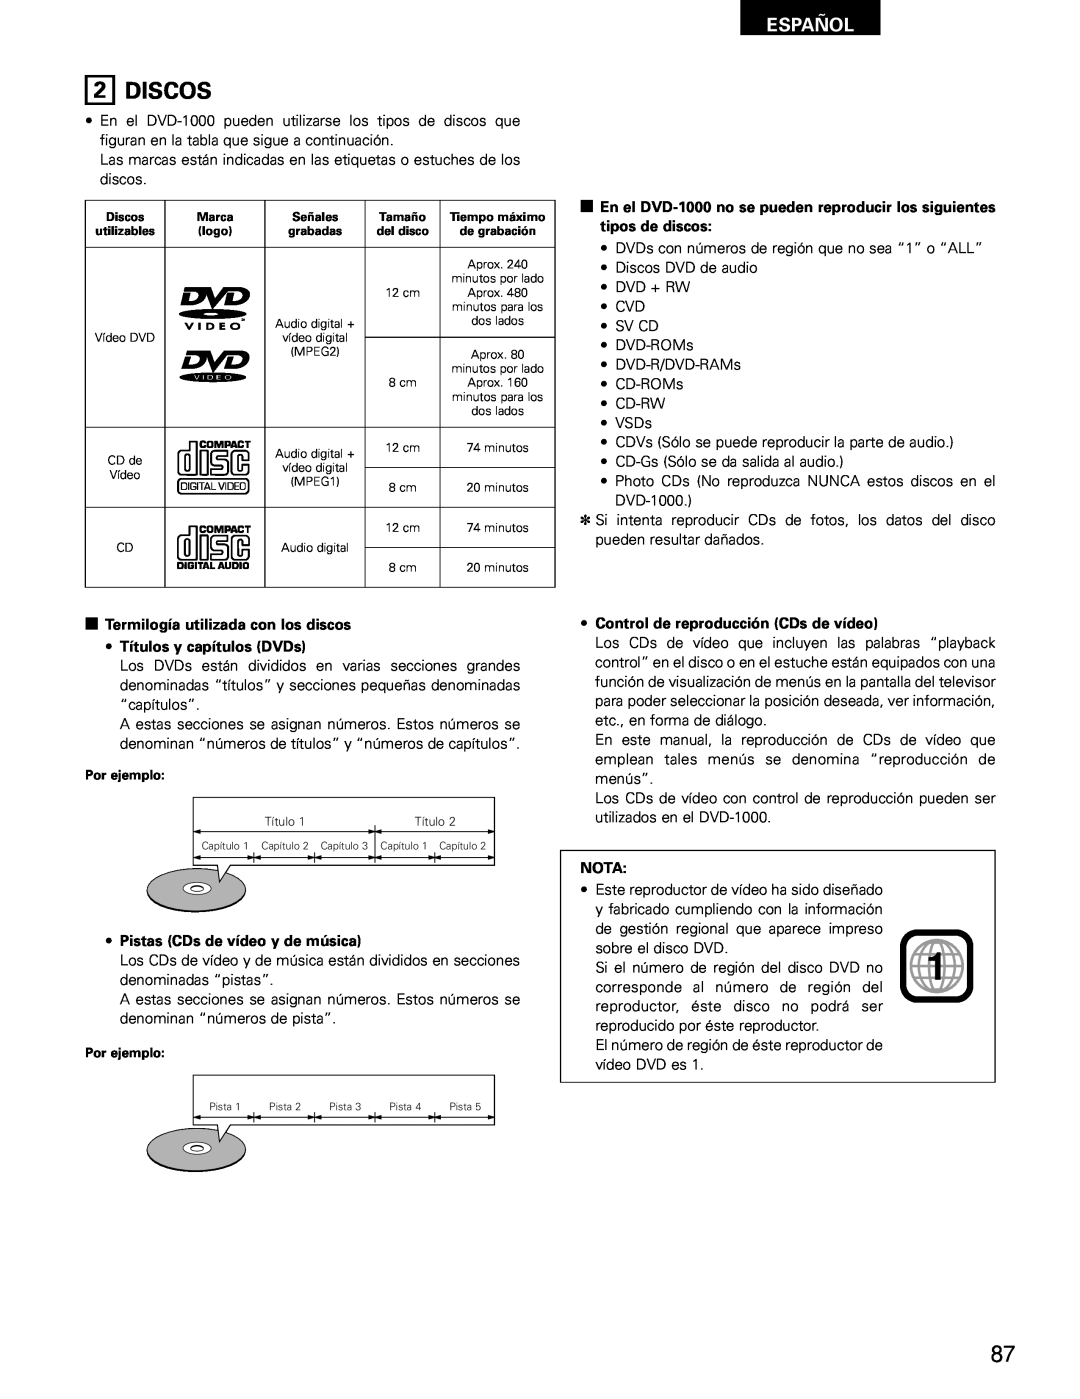 Denon DVD-1000 manual Discos, Español, Termilogía utilizada con los discos Títulos y capítulos DVDs, Nota 